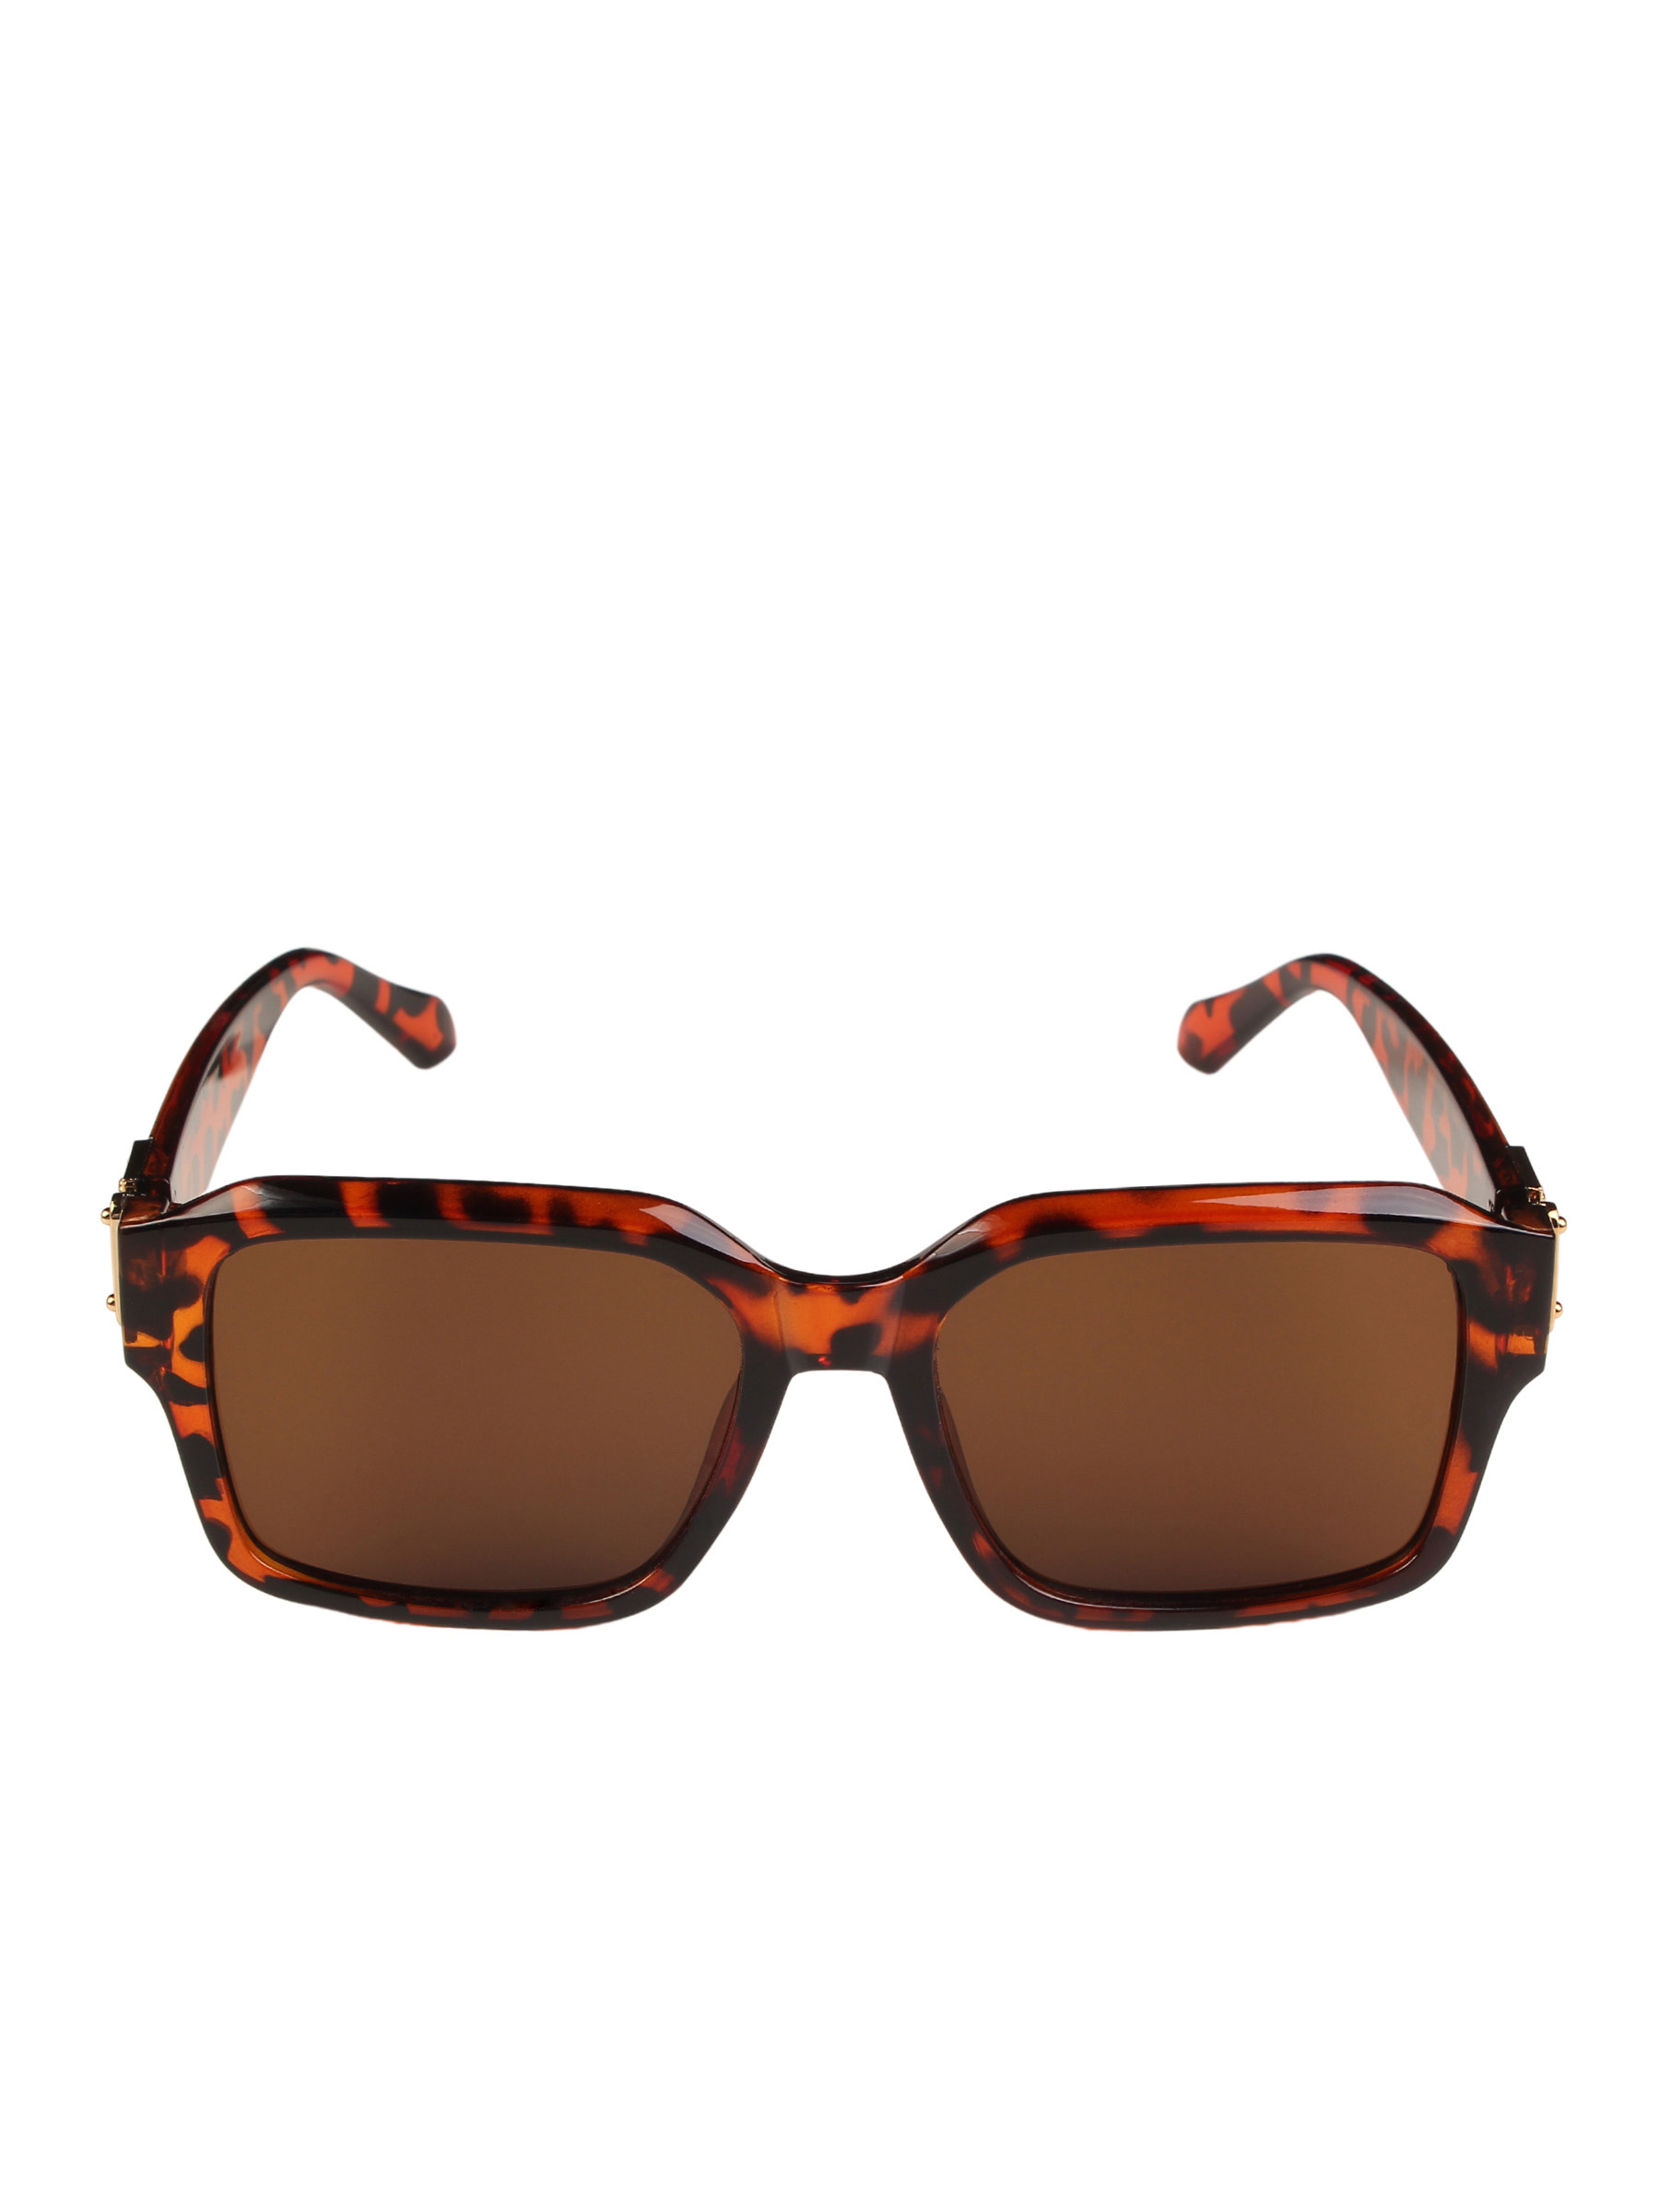 фото Солнцезащитные очки женские pretty mania dd022 леопардовые/карамельные